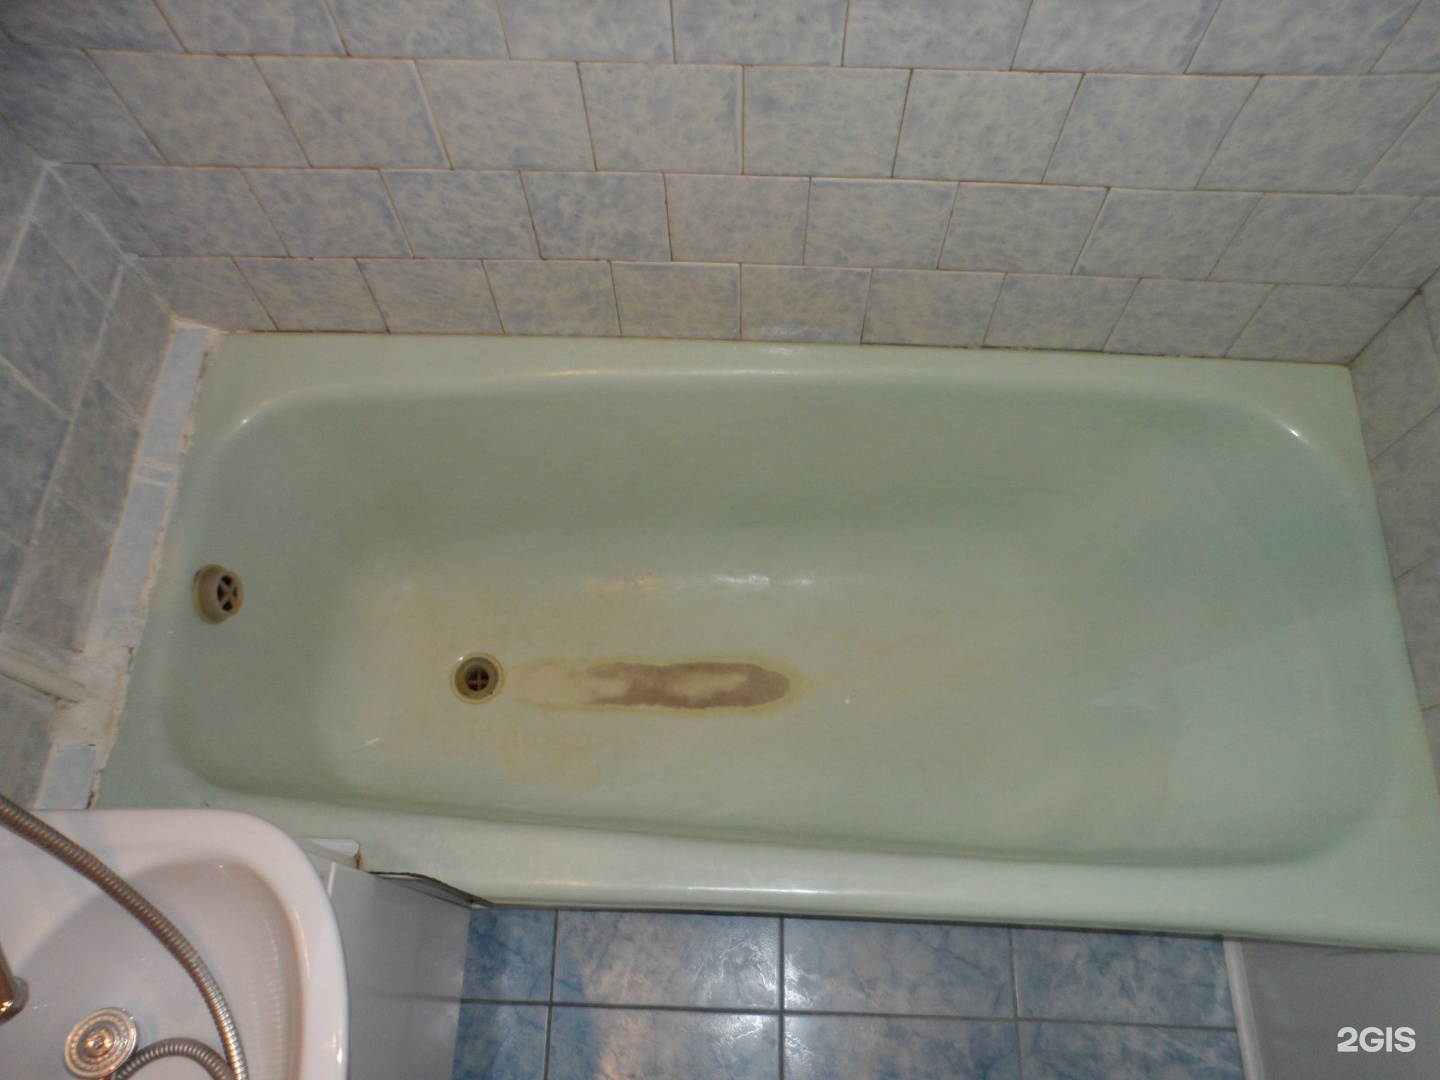 Ванна улан удэ купить. Маленькая ванна в Улан-Удэ цены. Где купить ванну в Улан Удэ недорого.